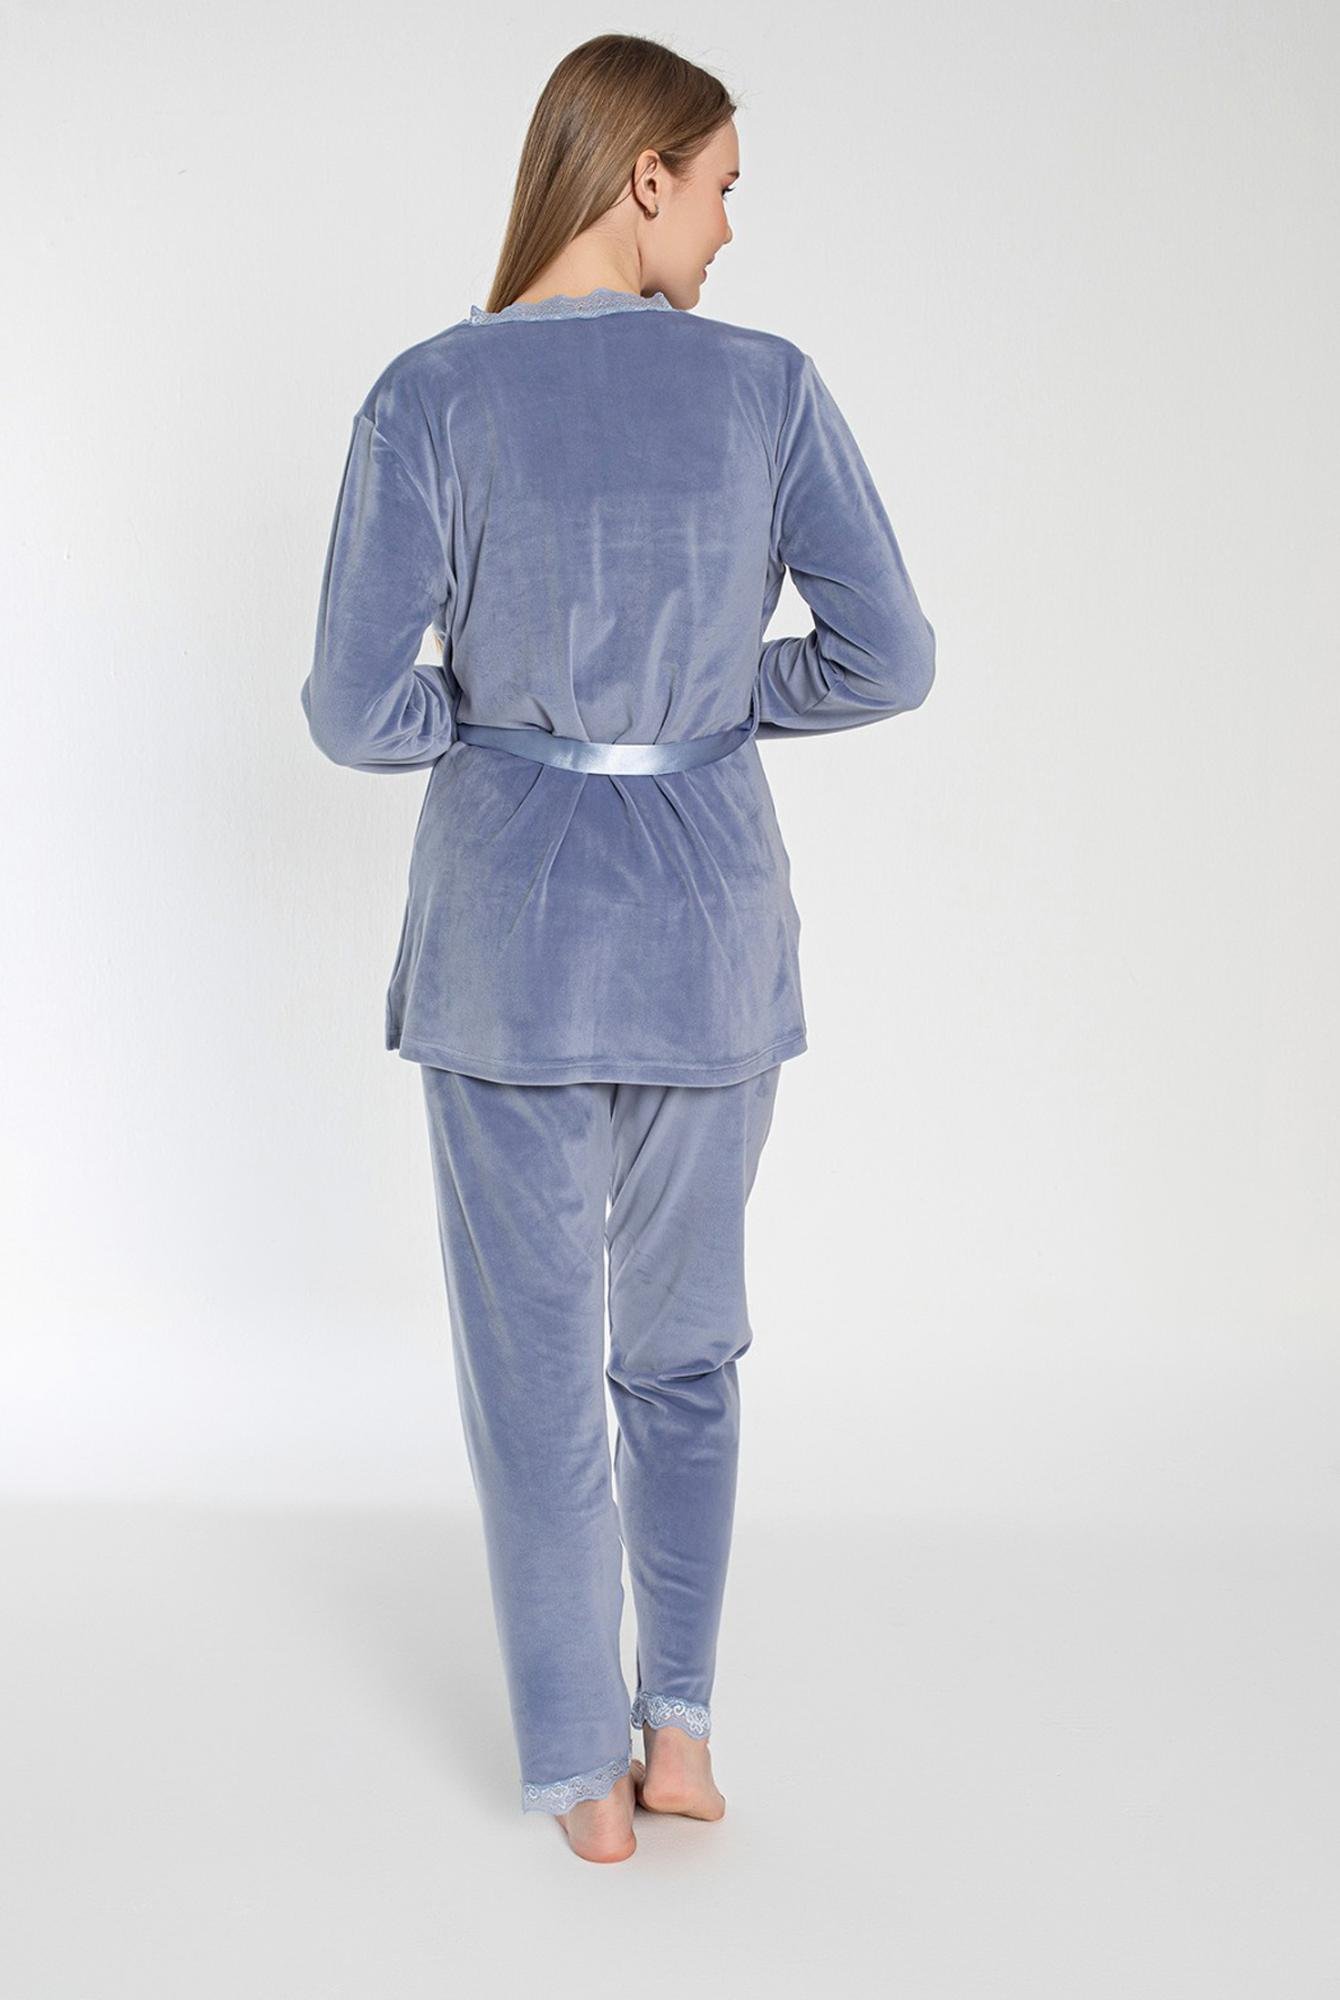  Ecrou Mavi Soft Kadife Truvakar Kol İp Askılı Pantolon 3Lü Pijama Takım